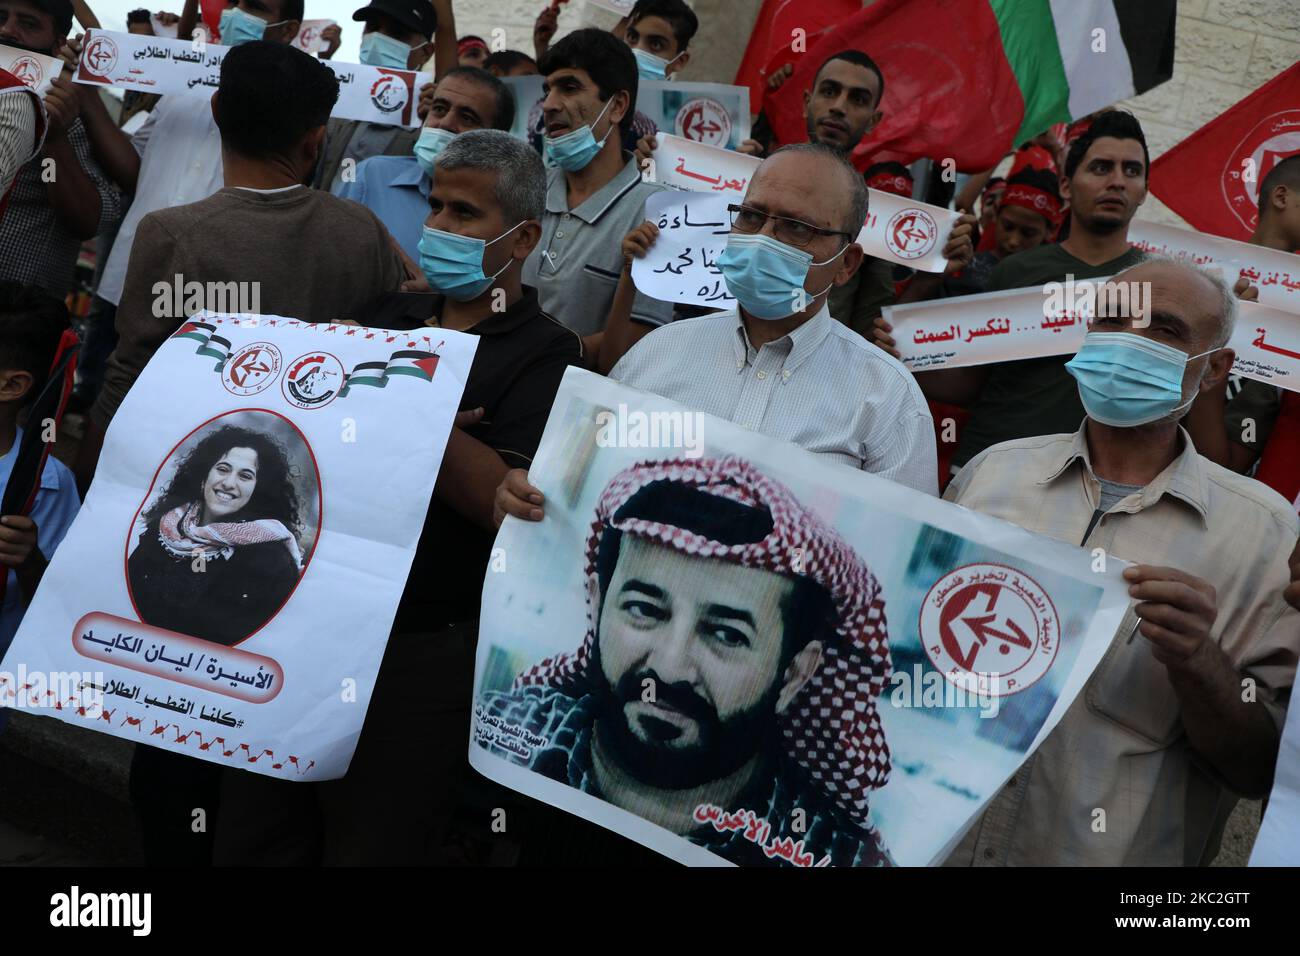 Die Palästinenser tragen Plakate, die die Freilassung des in israelischer Haft inhaftierten Verwaltungshäftlings Maher al-Akhras während einer Demonstration in der Stadt Rafah im südlichen Gazastreifen am 24. Oktober 2020 fordern, nachdem sich sein Gesundheitszustand während eines fast 89-tägigen Hungerstreiks verschlechtert hat. - Maher al-Akhras, 49, wurde in der Nähe von Nablus verhaftet und in Verwaltungshaft genommen, eine Politik, die Israel anwendet, um mutmaßliche Militante ohne Anklage zu halten. Der verheiratete Vater von sechs Kindern begann seinen Streik, um gegen die Politik zu protestieren. Er wurde zuvor mehrere Male von Israel verhaftet, was ihm vorwirft, Verbindungen zum I zu haben Stockfoto